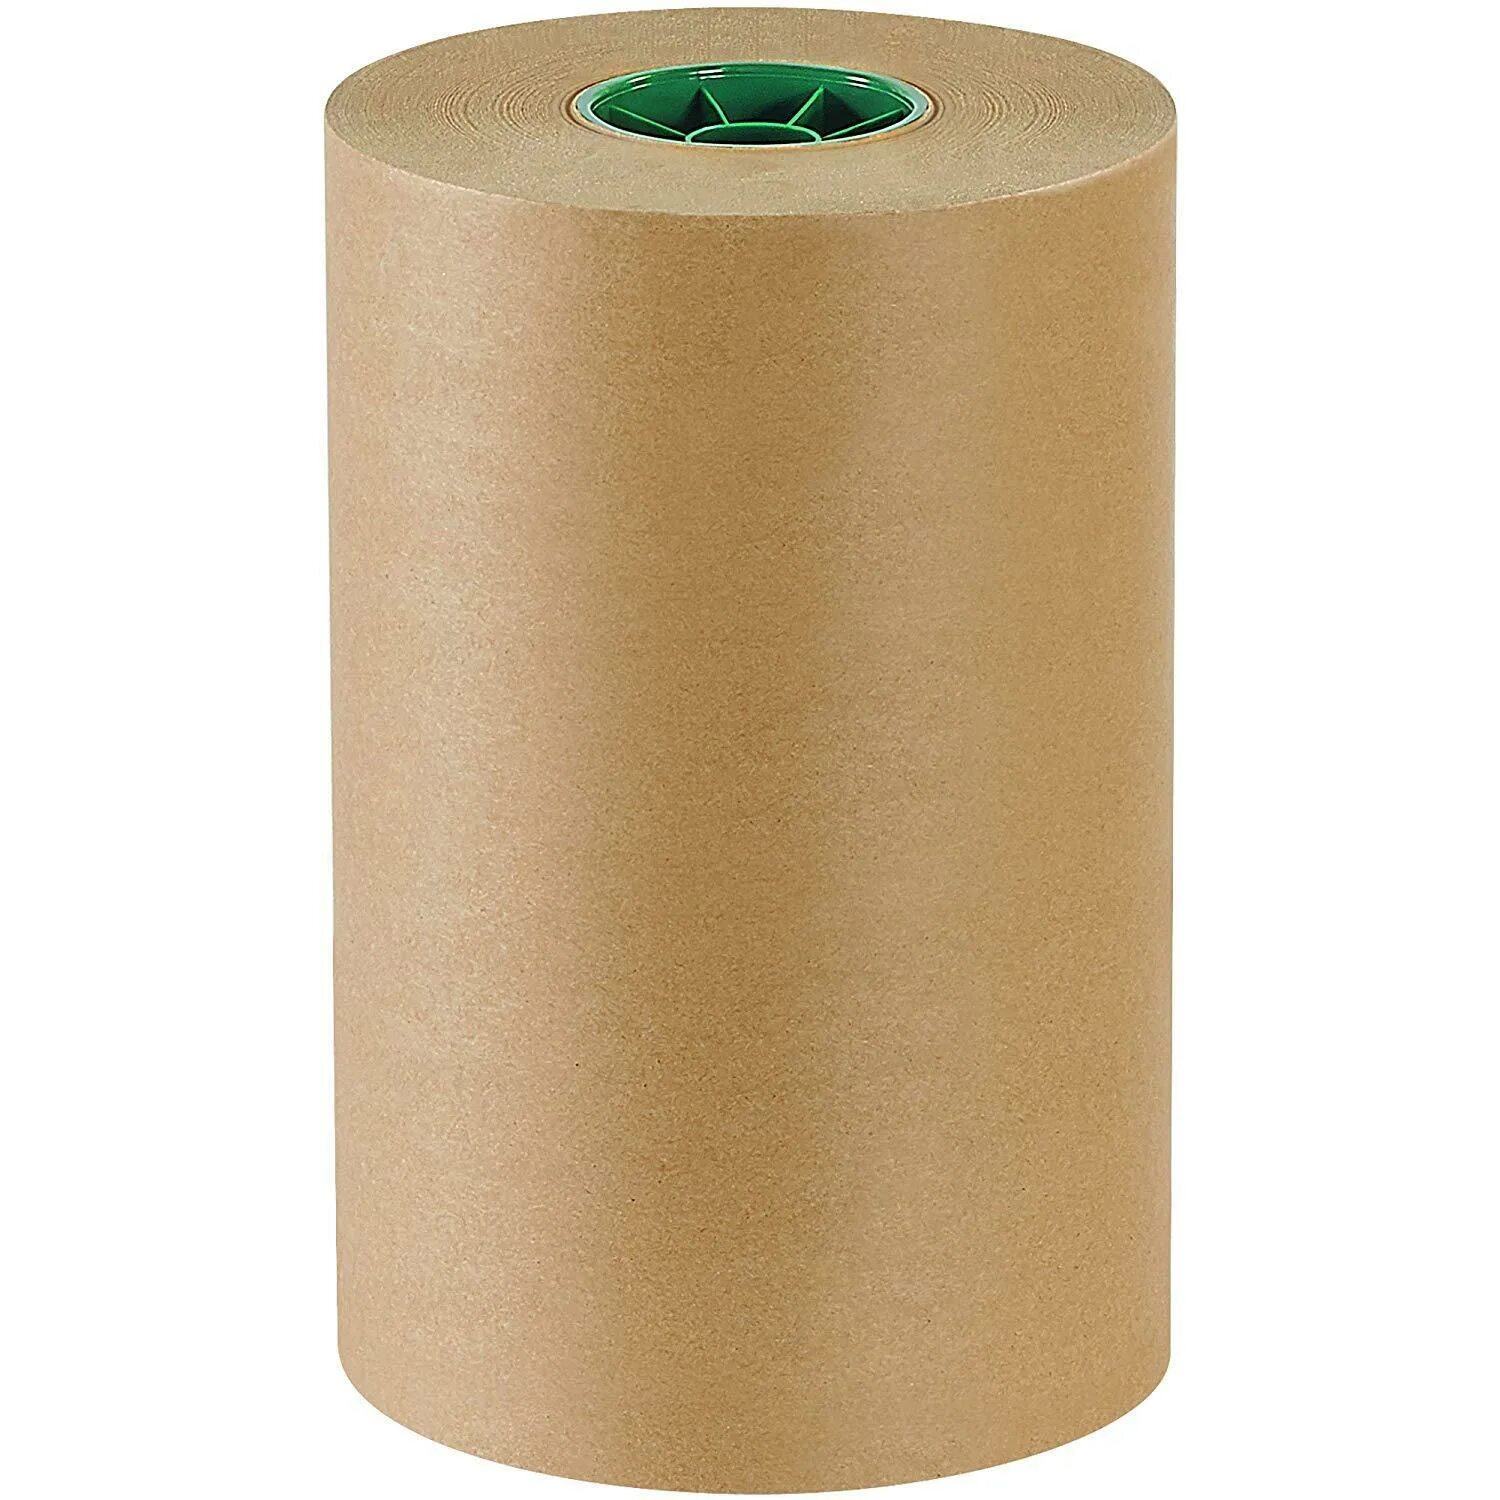 Рулон бумаги. Крафт бумага. Упаковочная бумага в рулонах. Бумага для упаковки в больших рулонах.